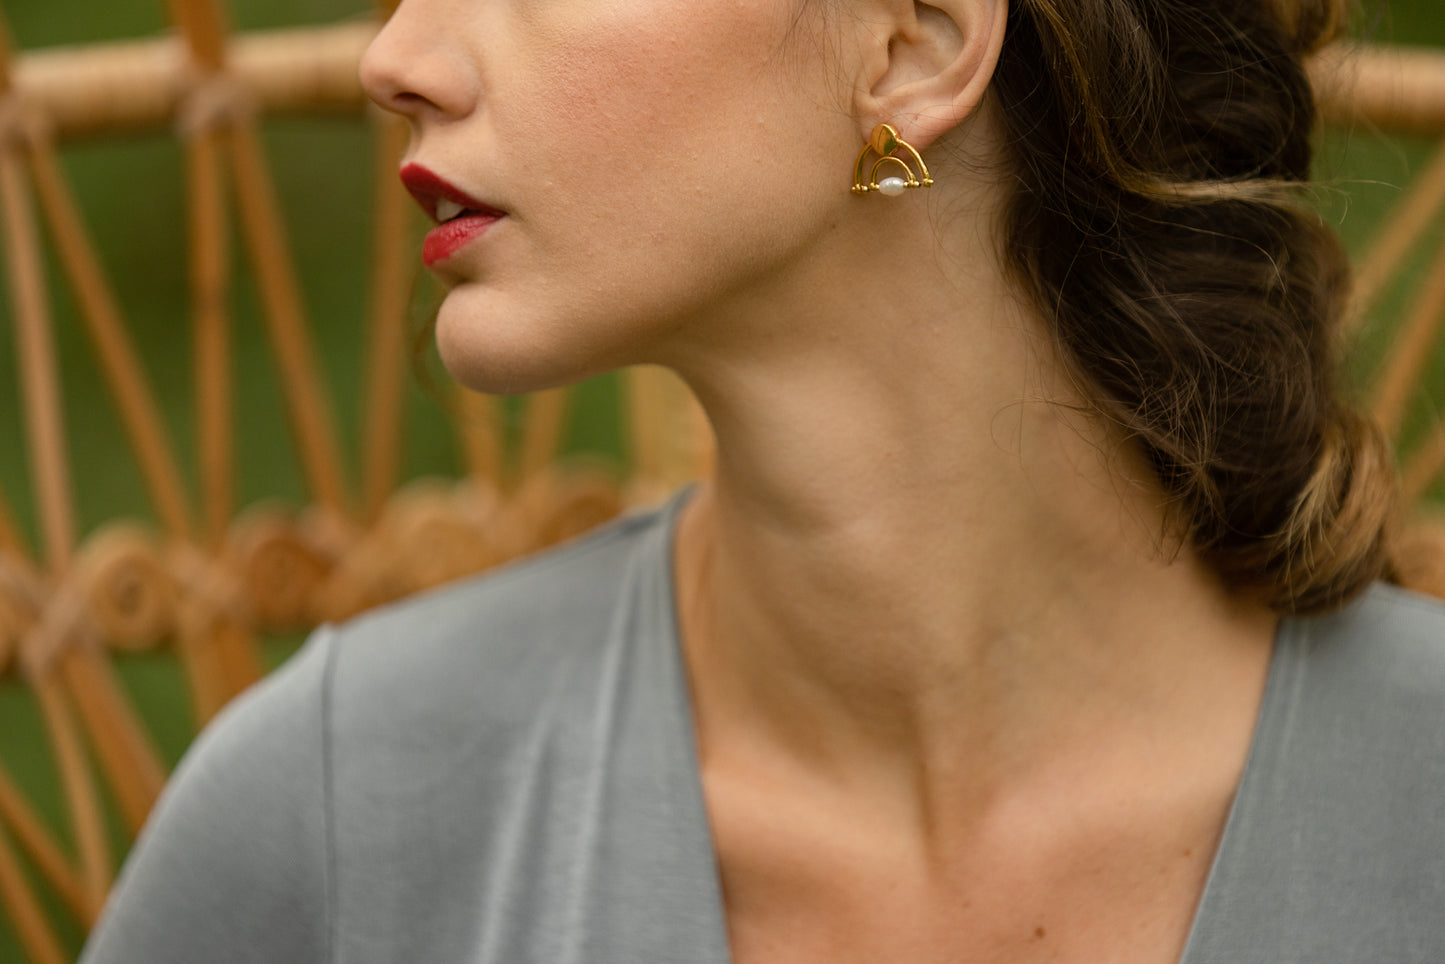 Boucles d’oreilles Oriane  Ces boucles d’oreilles sont réalisées en plaqué or et composées d’une perle naturelle.  Elles sont idéales pour des cheveux courts ou attachés.